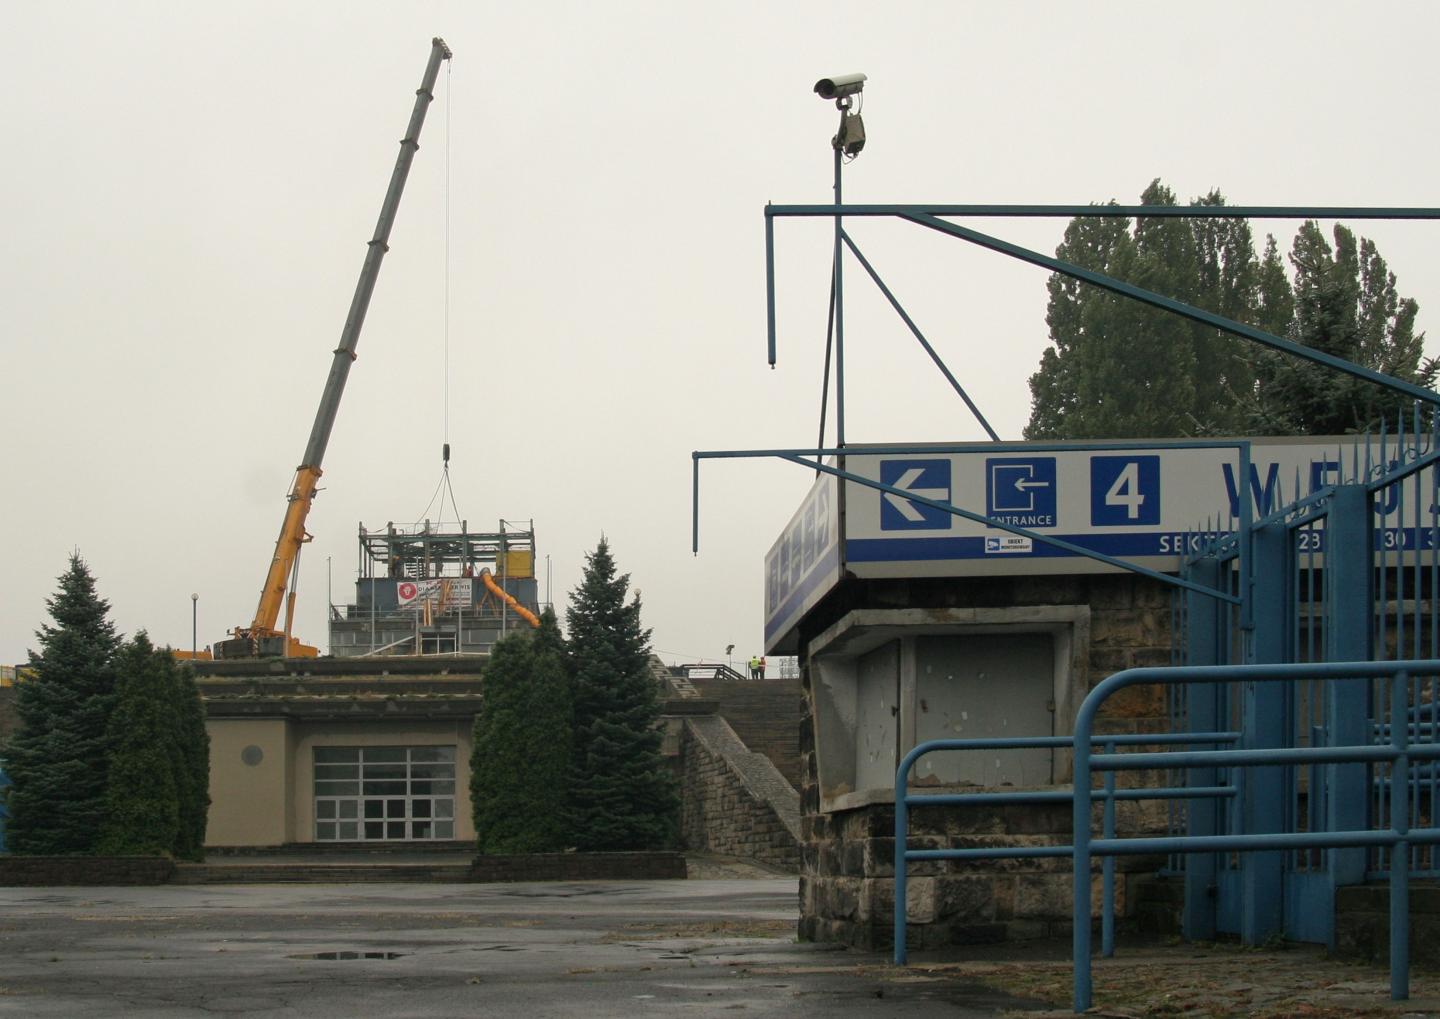 Zdjęcie od strony kas Stadionu Śląskiego. W tle widać dźwig i rozebraną wieżę.